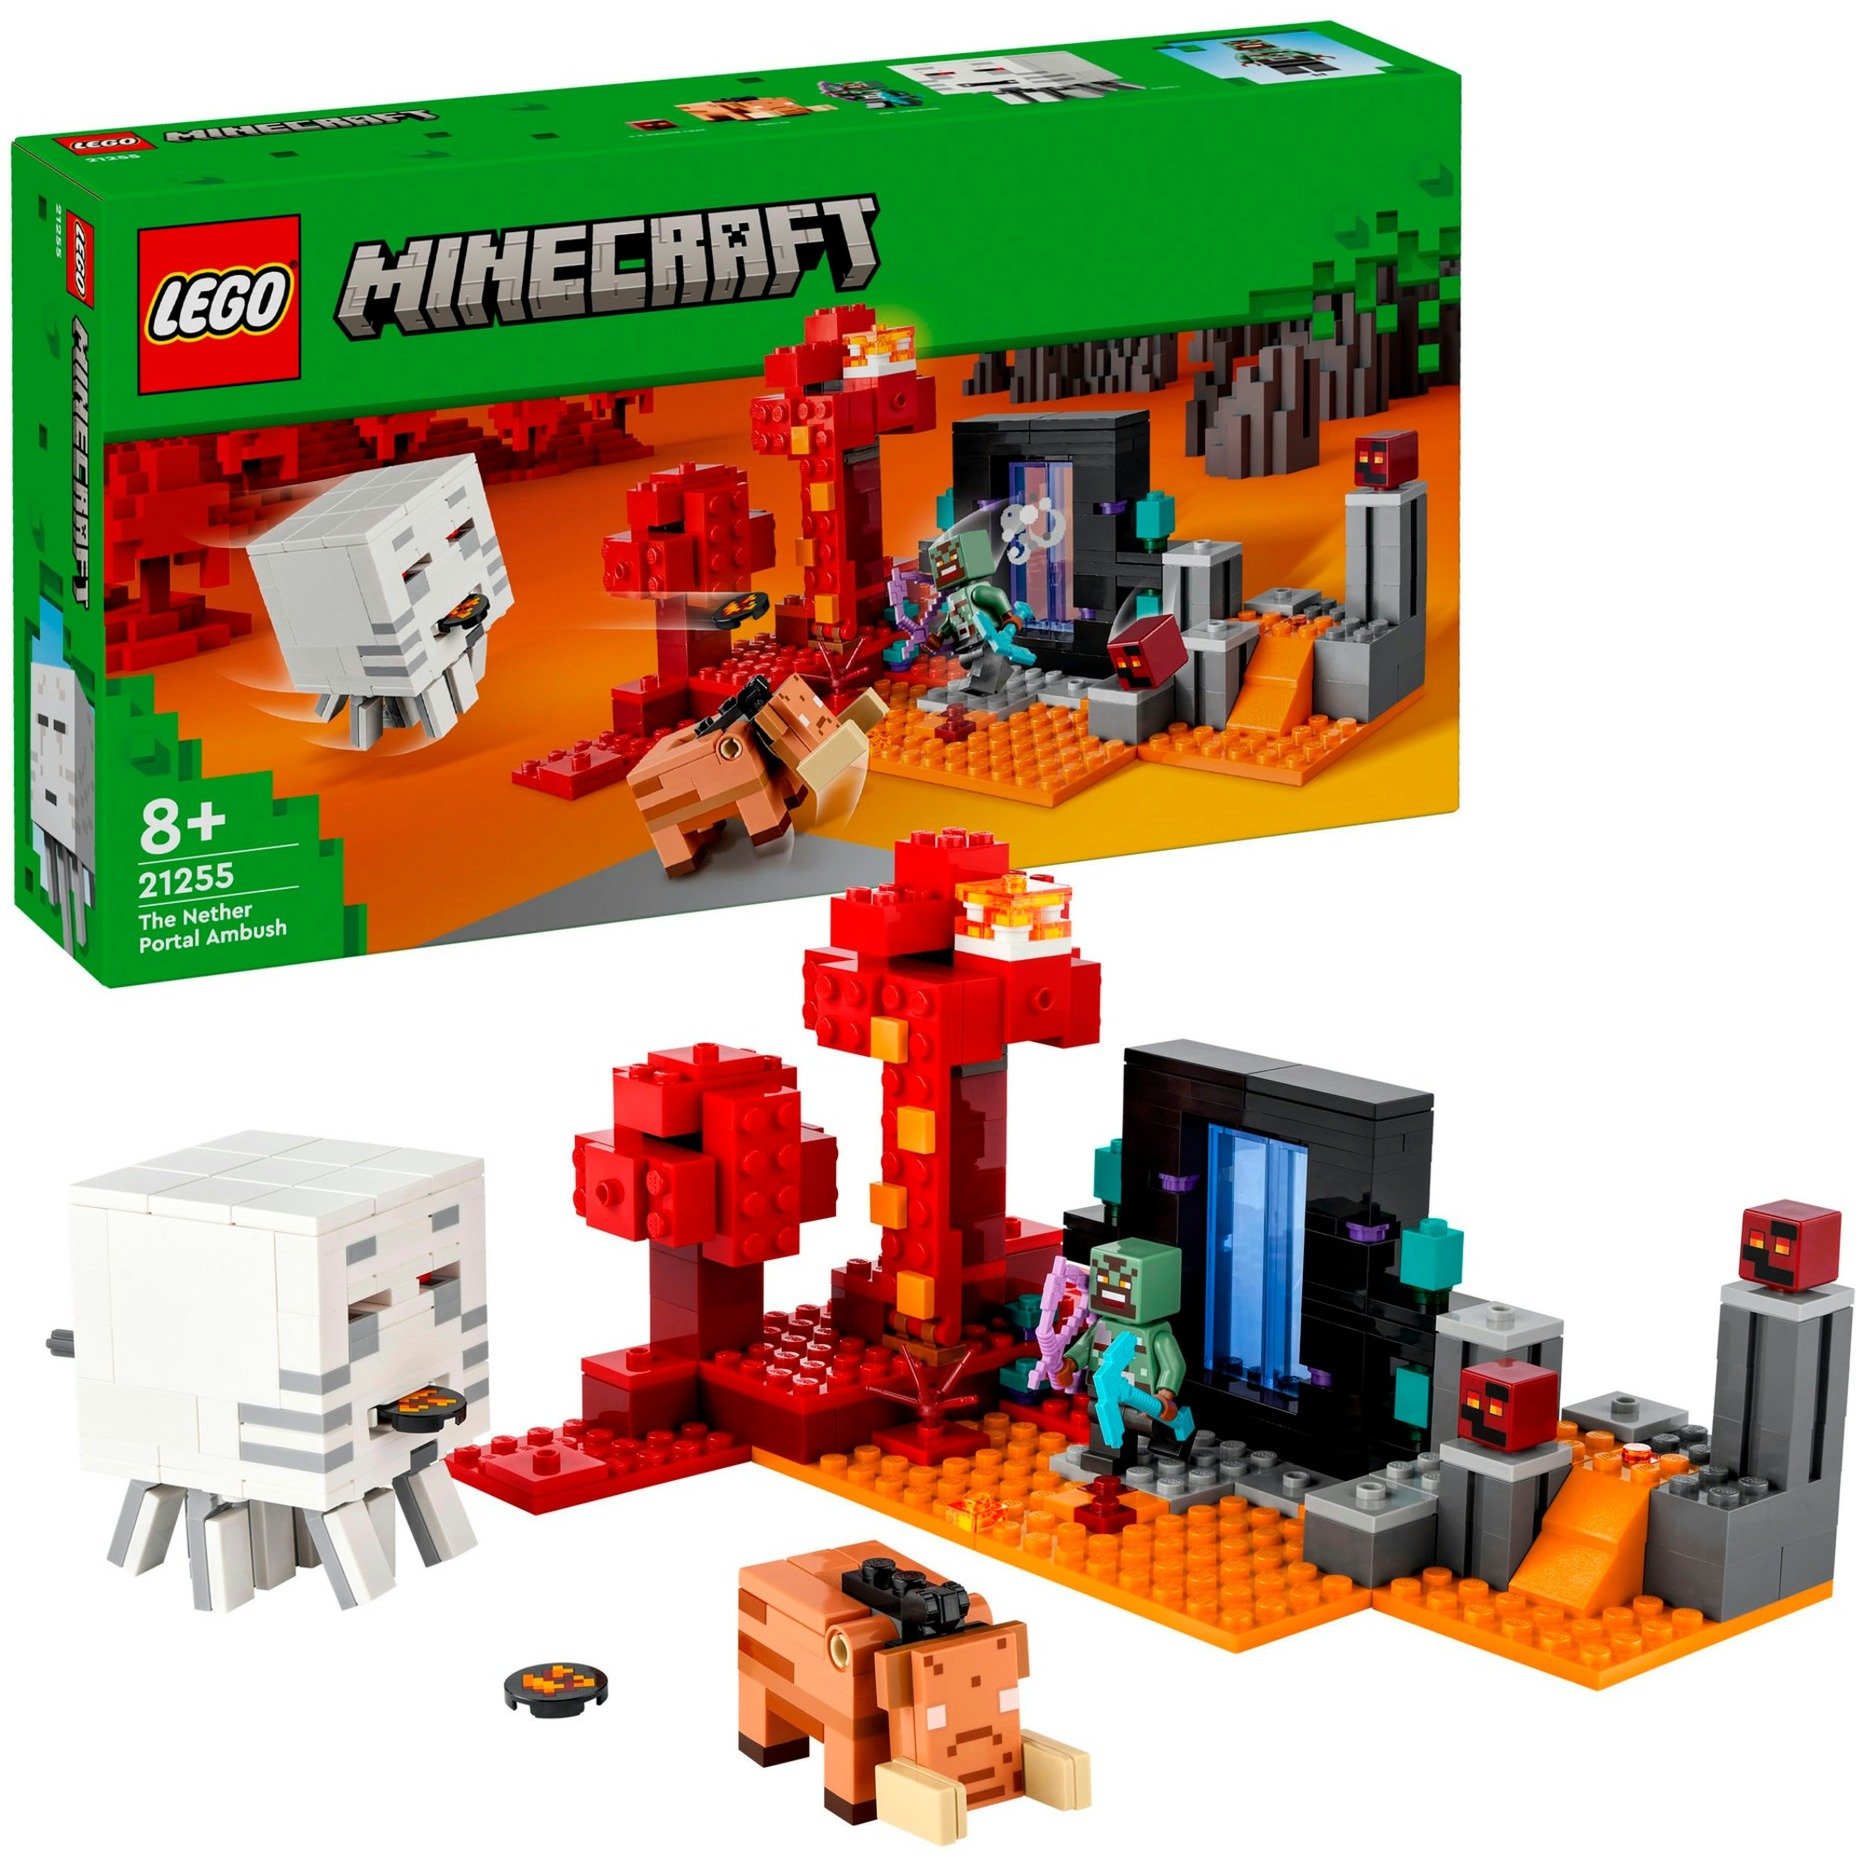 21255 Minecraft Hinterhalt am Netherportal, Konstruktionsspielzeug von Lego